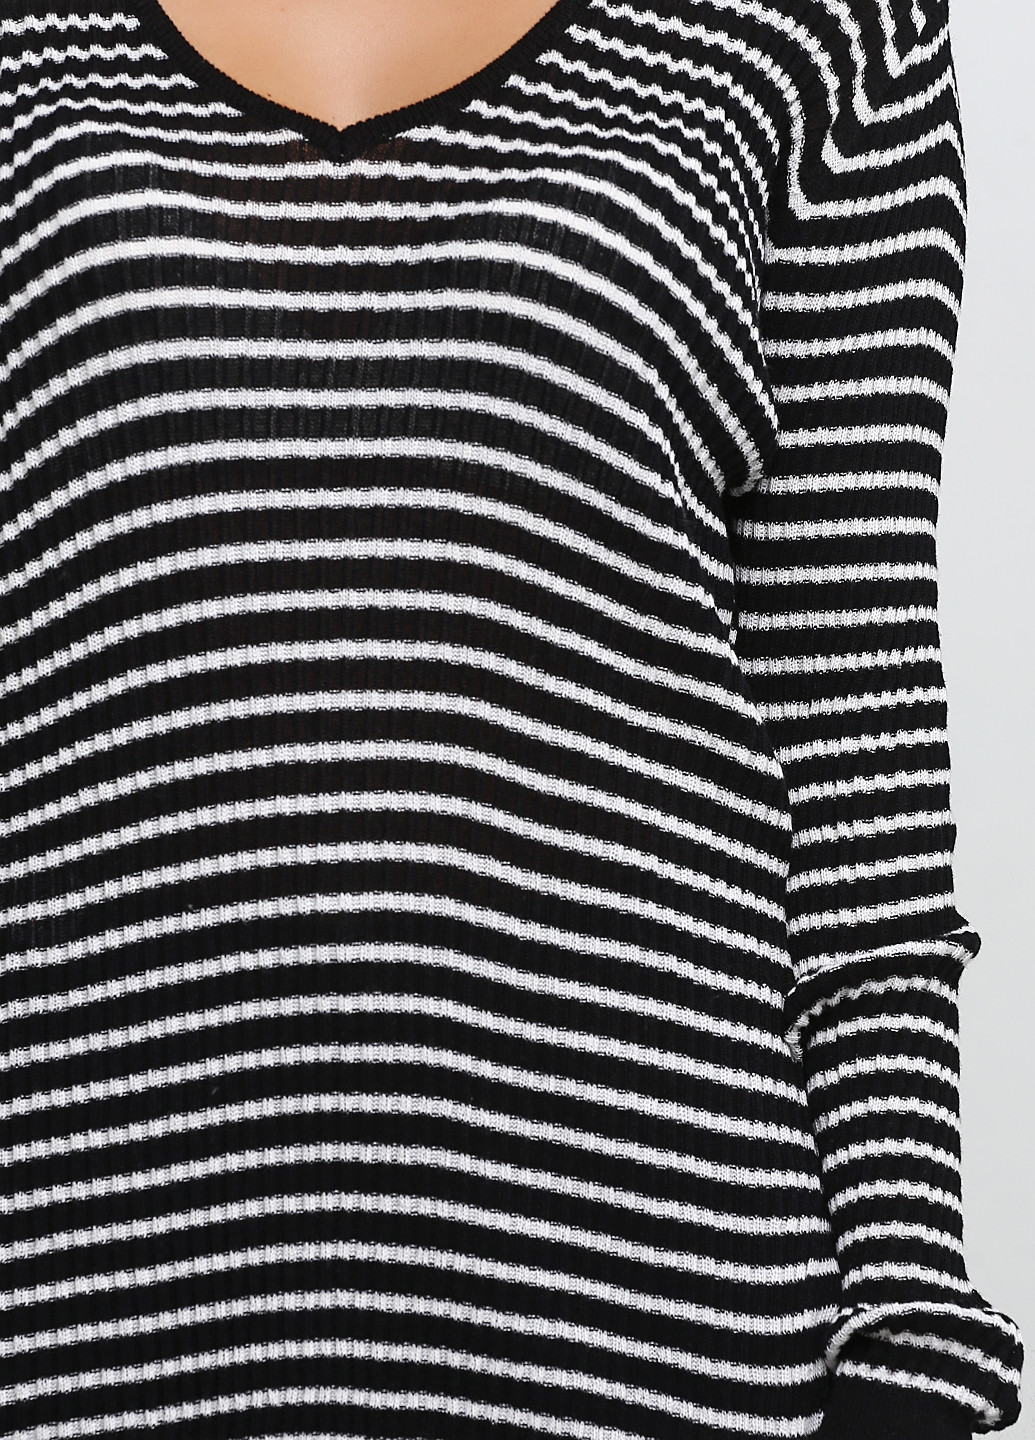 Черно-белый демисезонный пуловер пуловер Mango